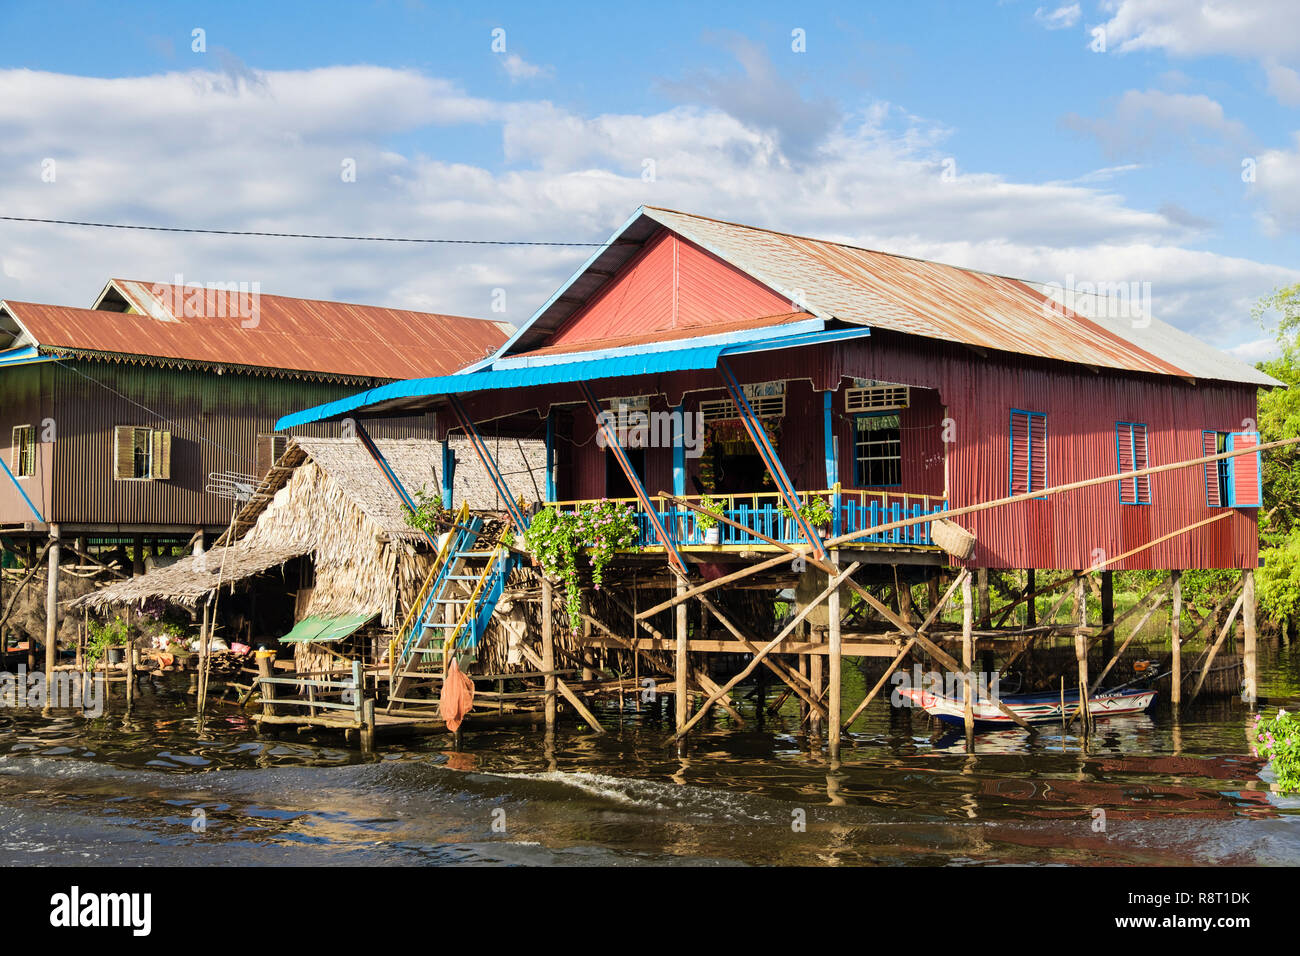 Maisons sur pilotis au village flottant dans le lac d'eau douce de Tonle Sap. Kampong Phluk, Siem Reap, Cambodge, Indochine, Asie du sud-est Banque D'Images